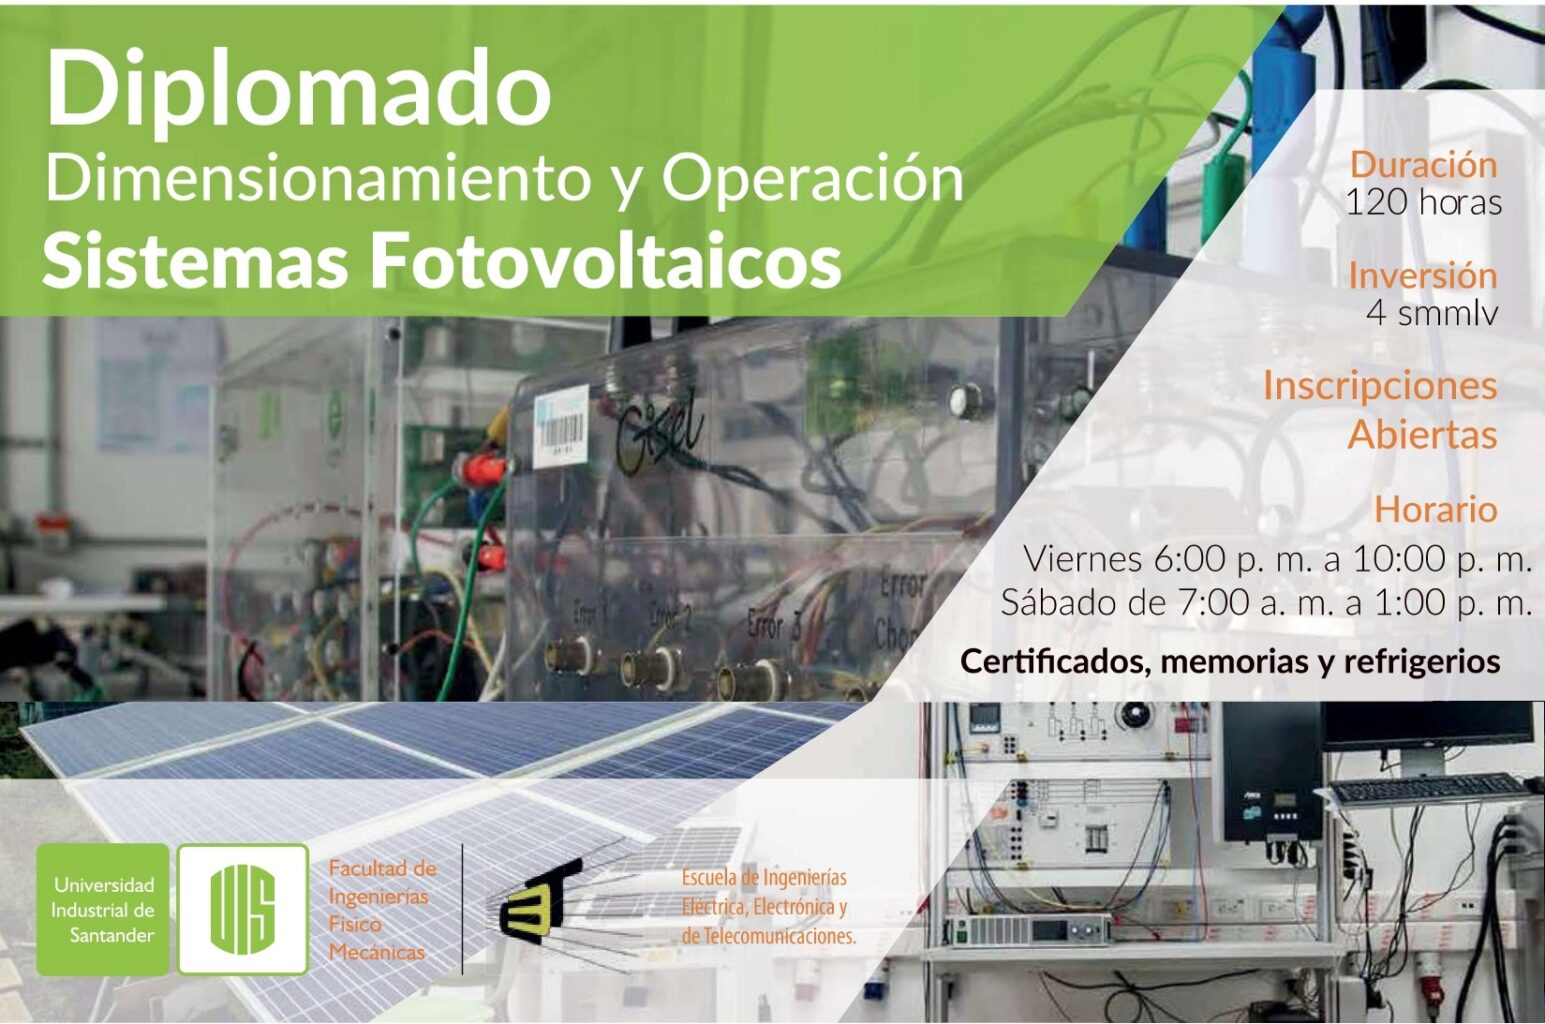 Flayer del diplomado en Dimensionamiento y Operación de Sistemas Fotovoltaicos.